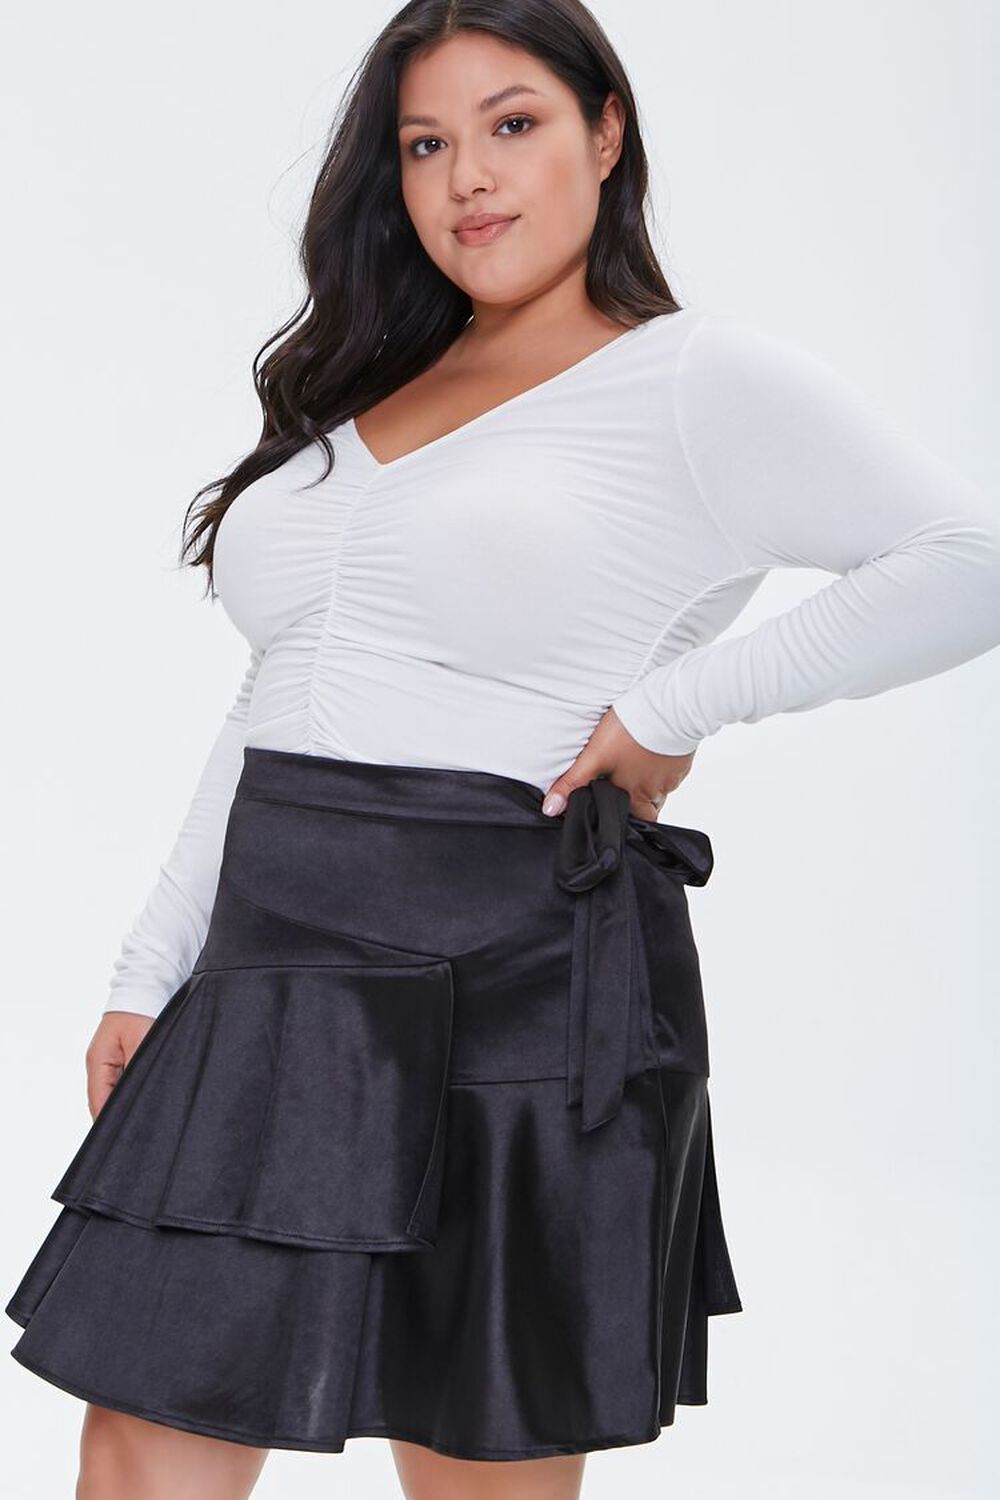 BLACK Plus Size Satin Ruffle Mini Skirt, image 1